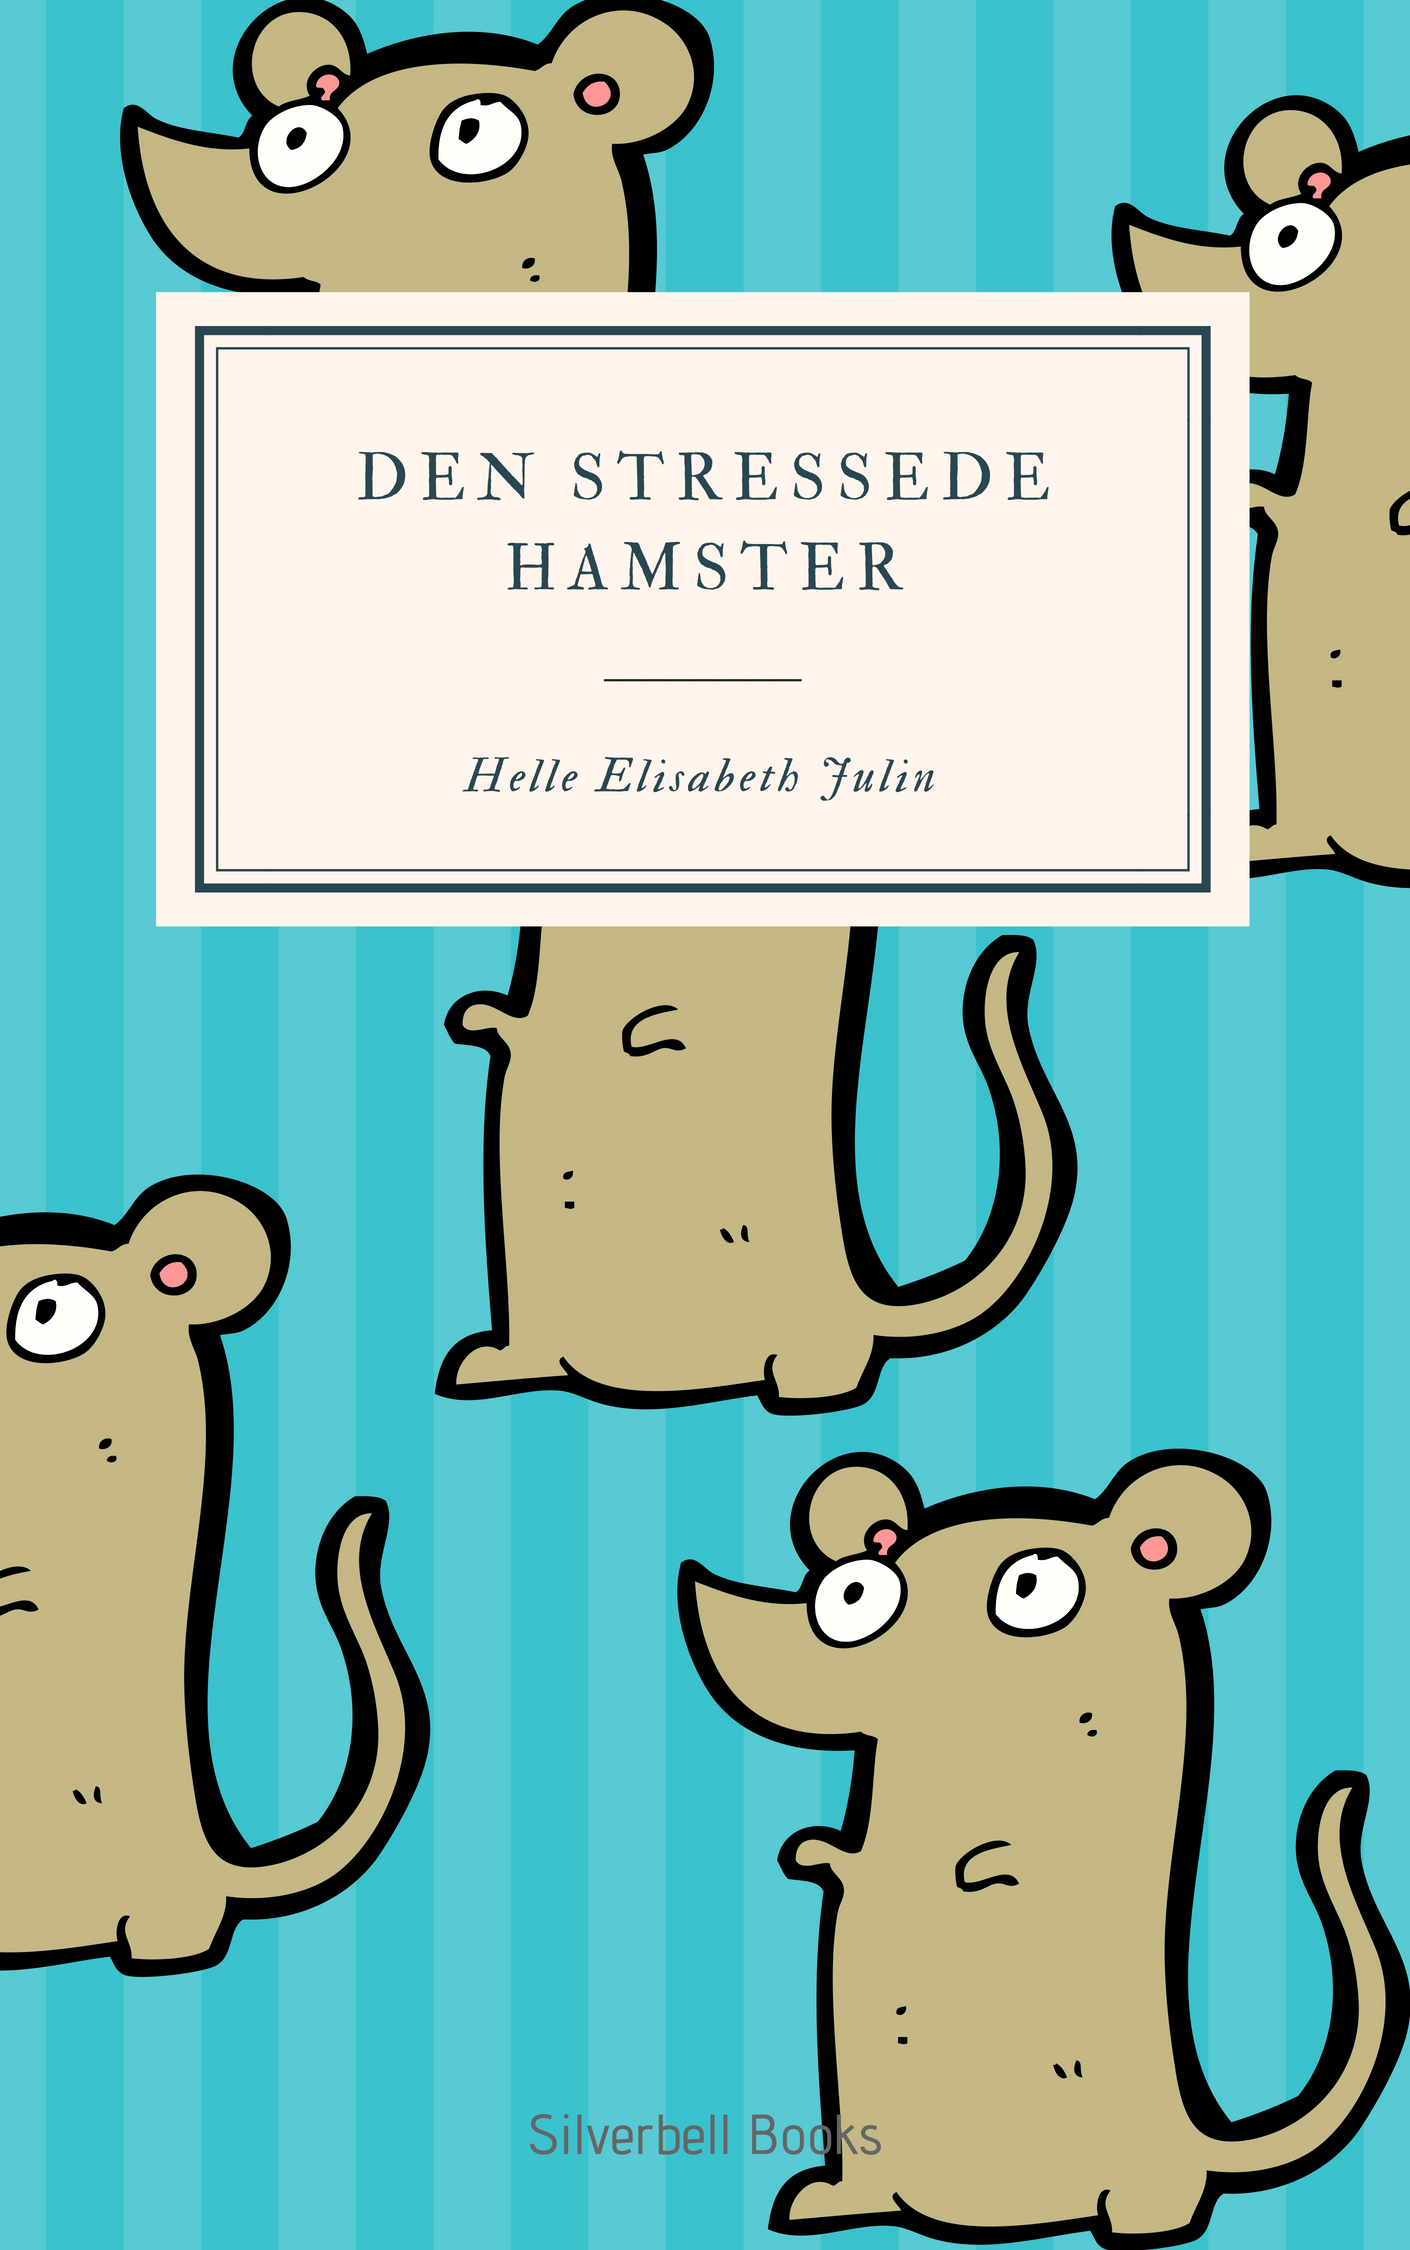 Den stressede hamster Kindle.png